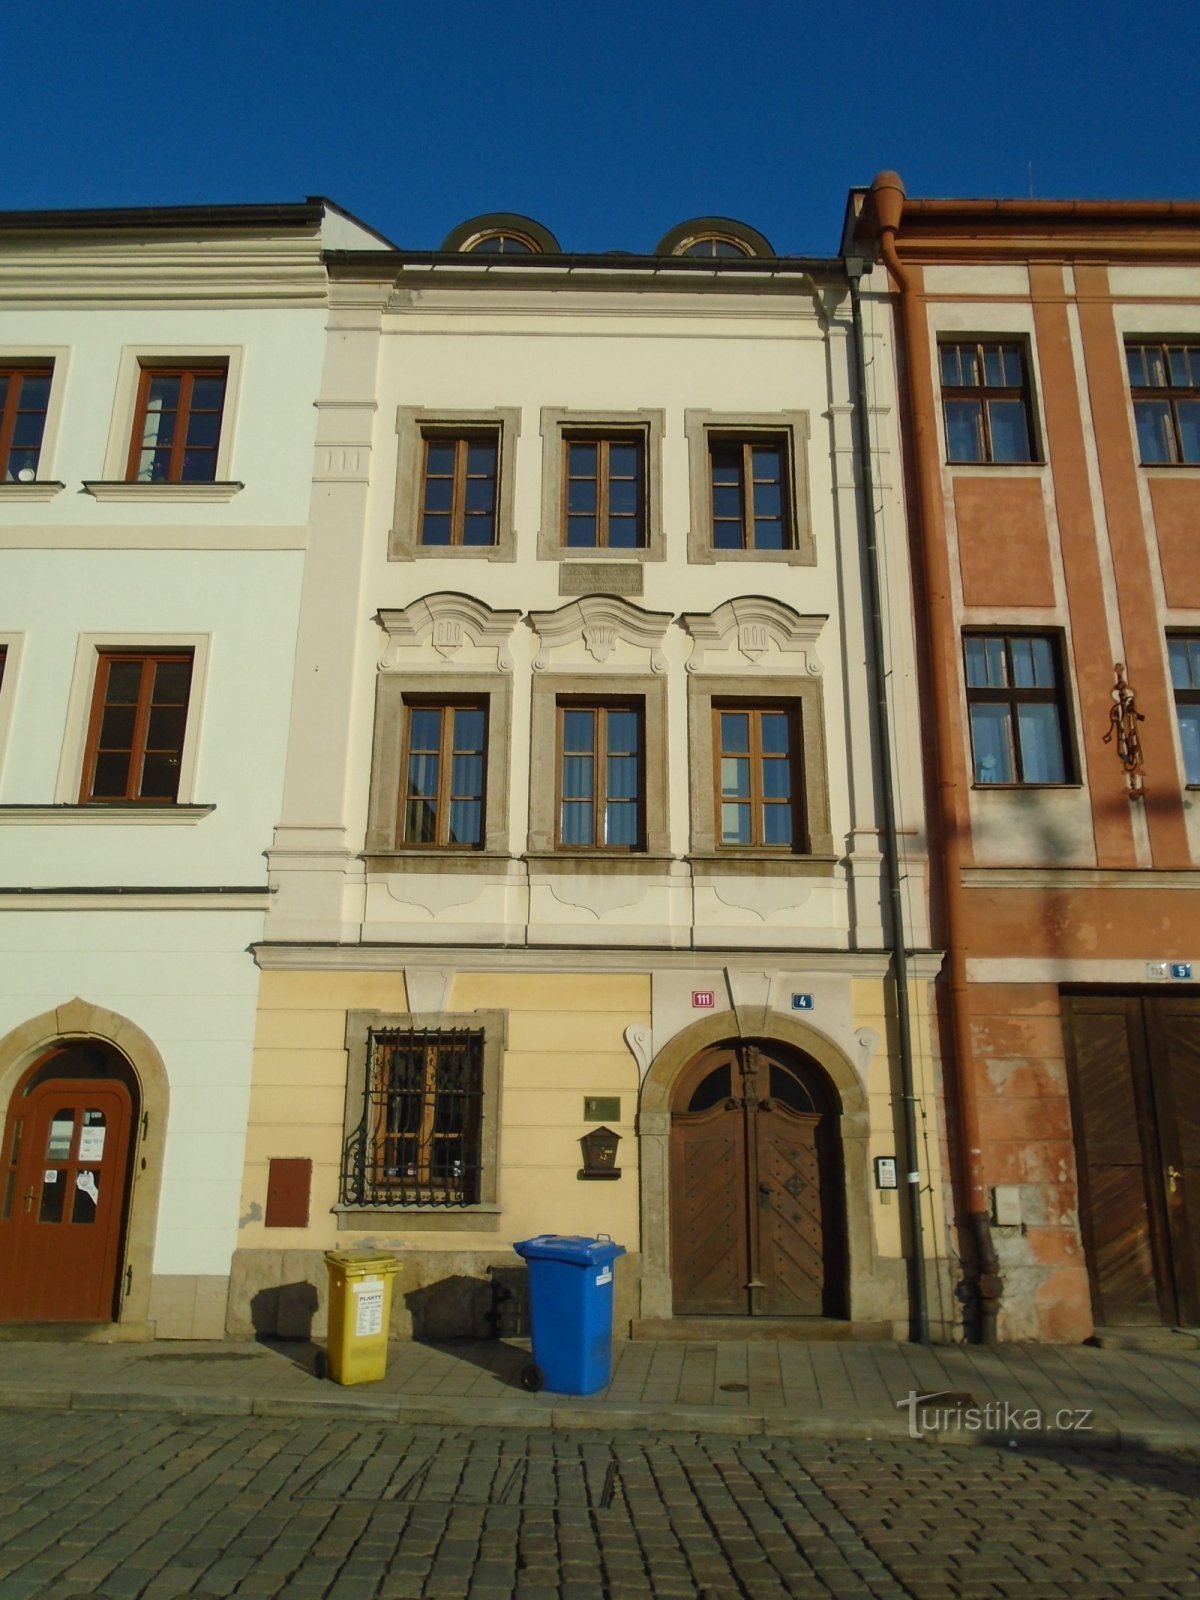 Malé náměstí nr. 111 (Hradec Králové, 30.1.2019 aprilie XNUMX)